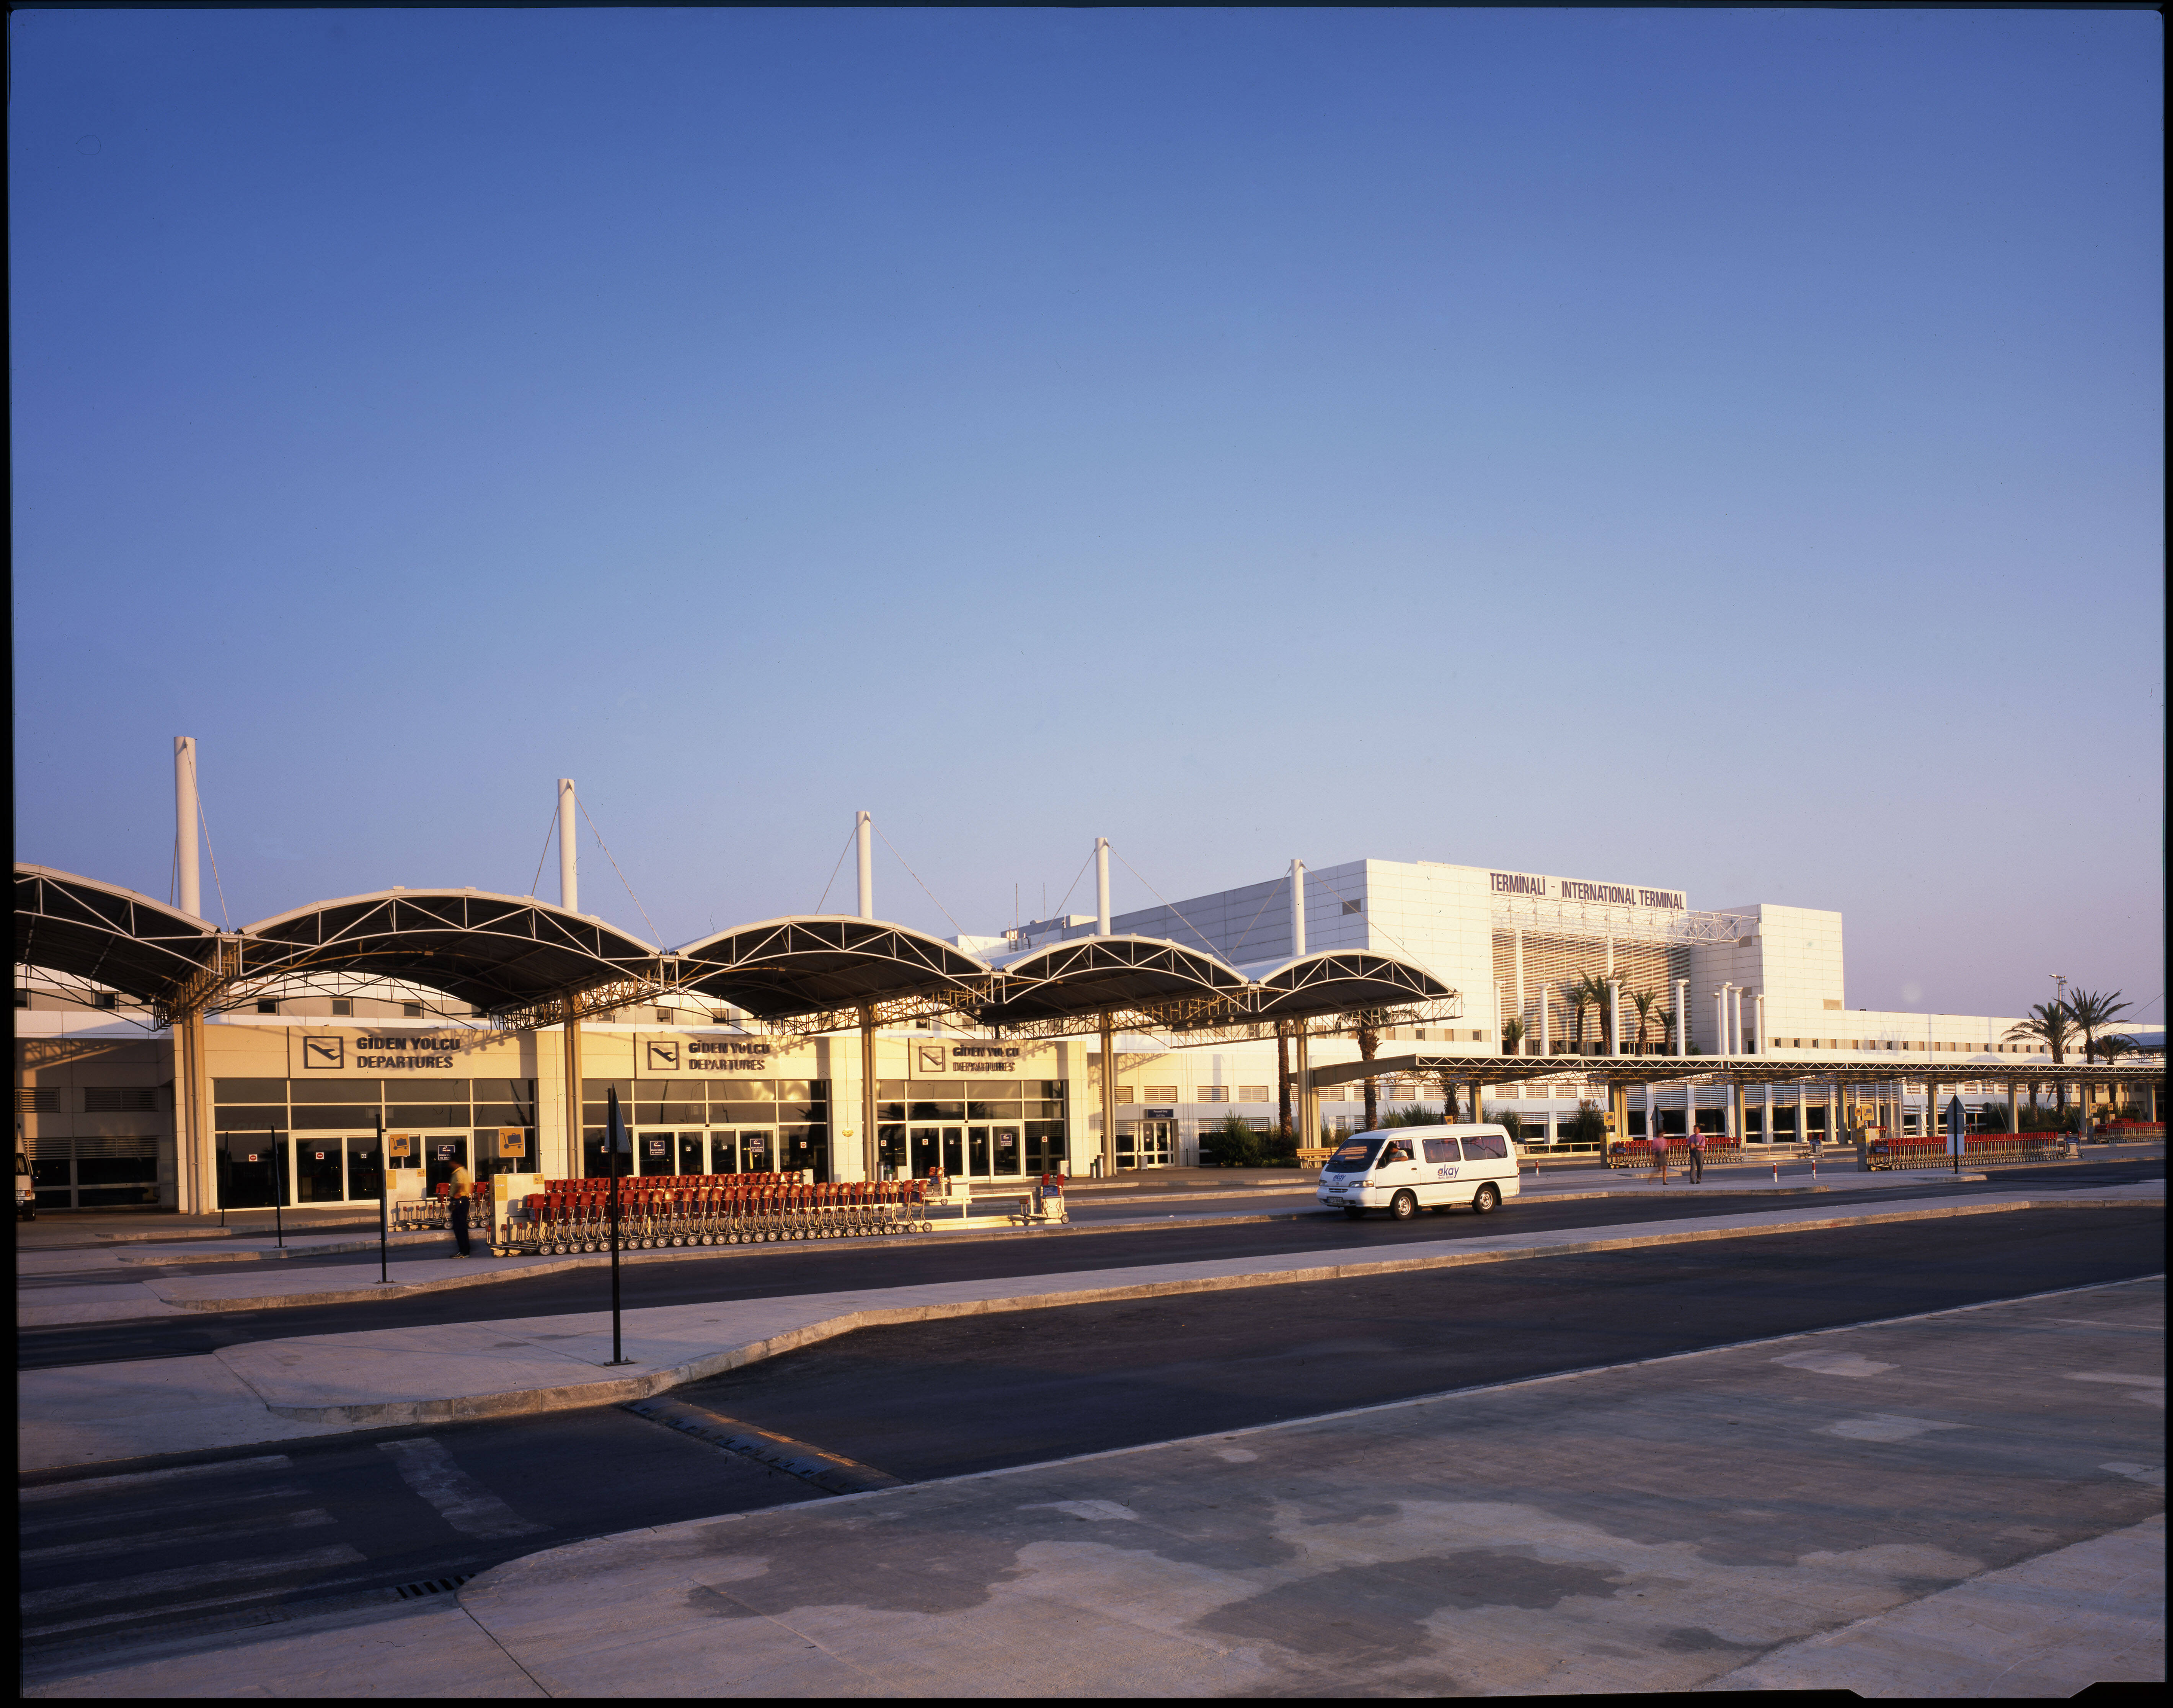 Antalya 1. Аэропорт Анталии терминал 1. Турция аэропорт Анталия терминал 1. Аэропорт Хавалимани Анталия. Турция аэропорт Анталия 1 и 2 терминал.